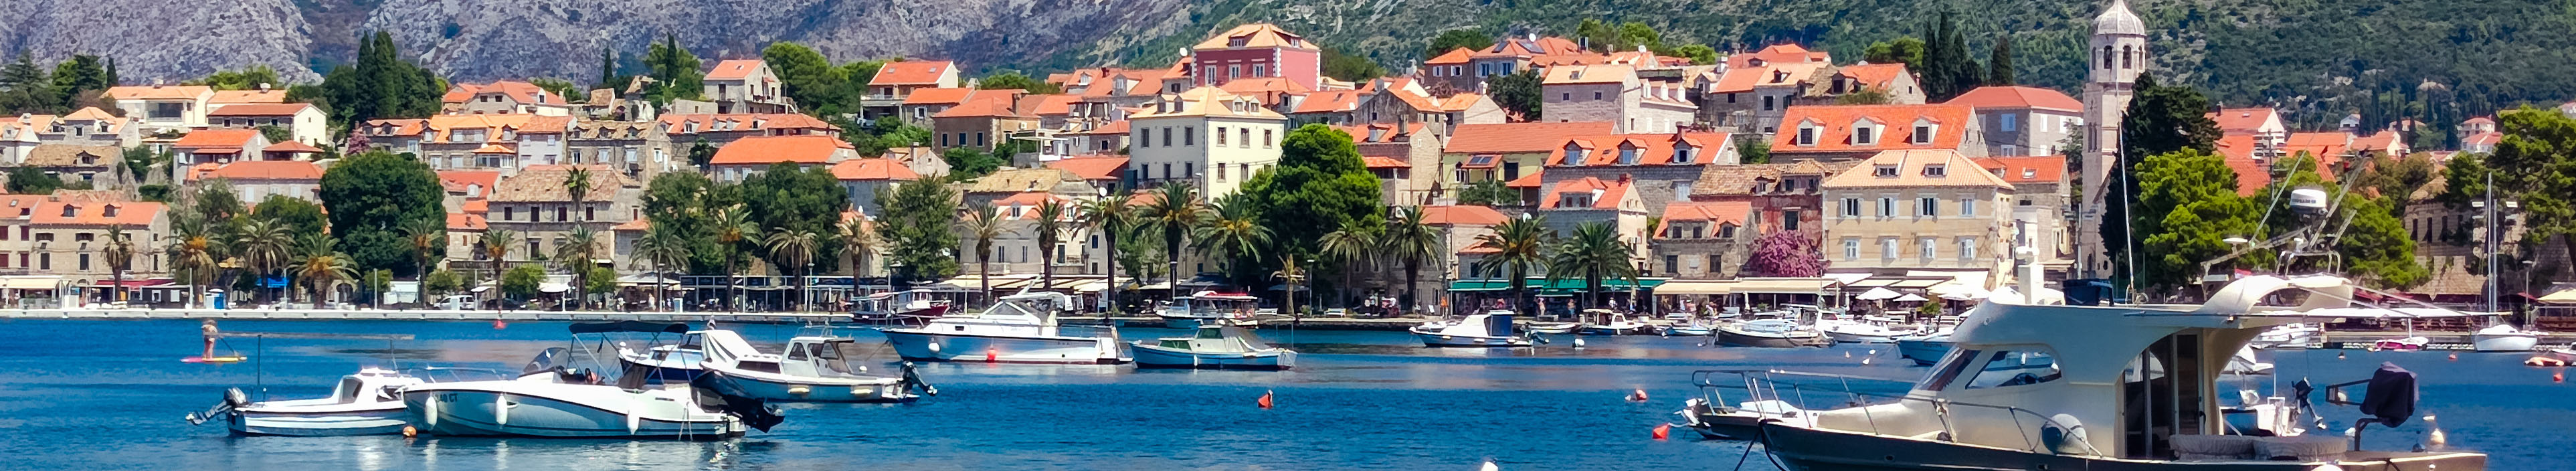 Bucht, Hotels, Boote und Gebirge in Kroatien